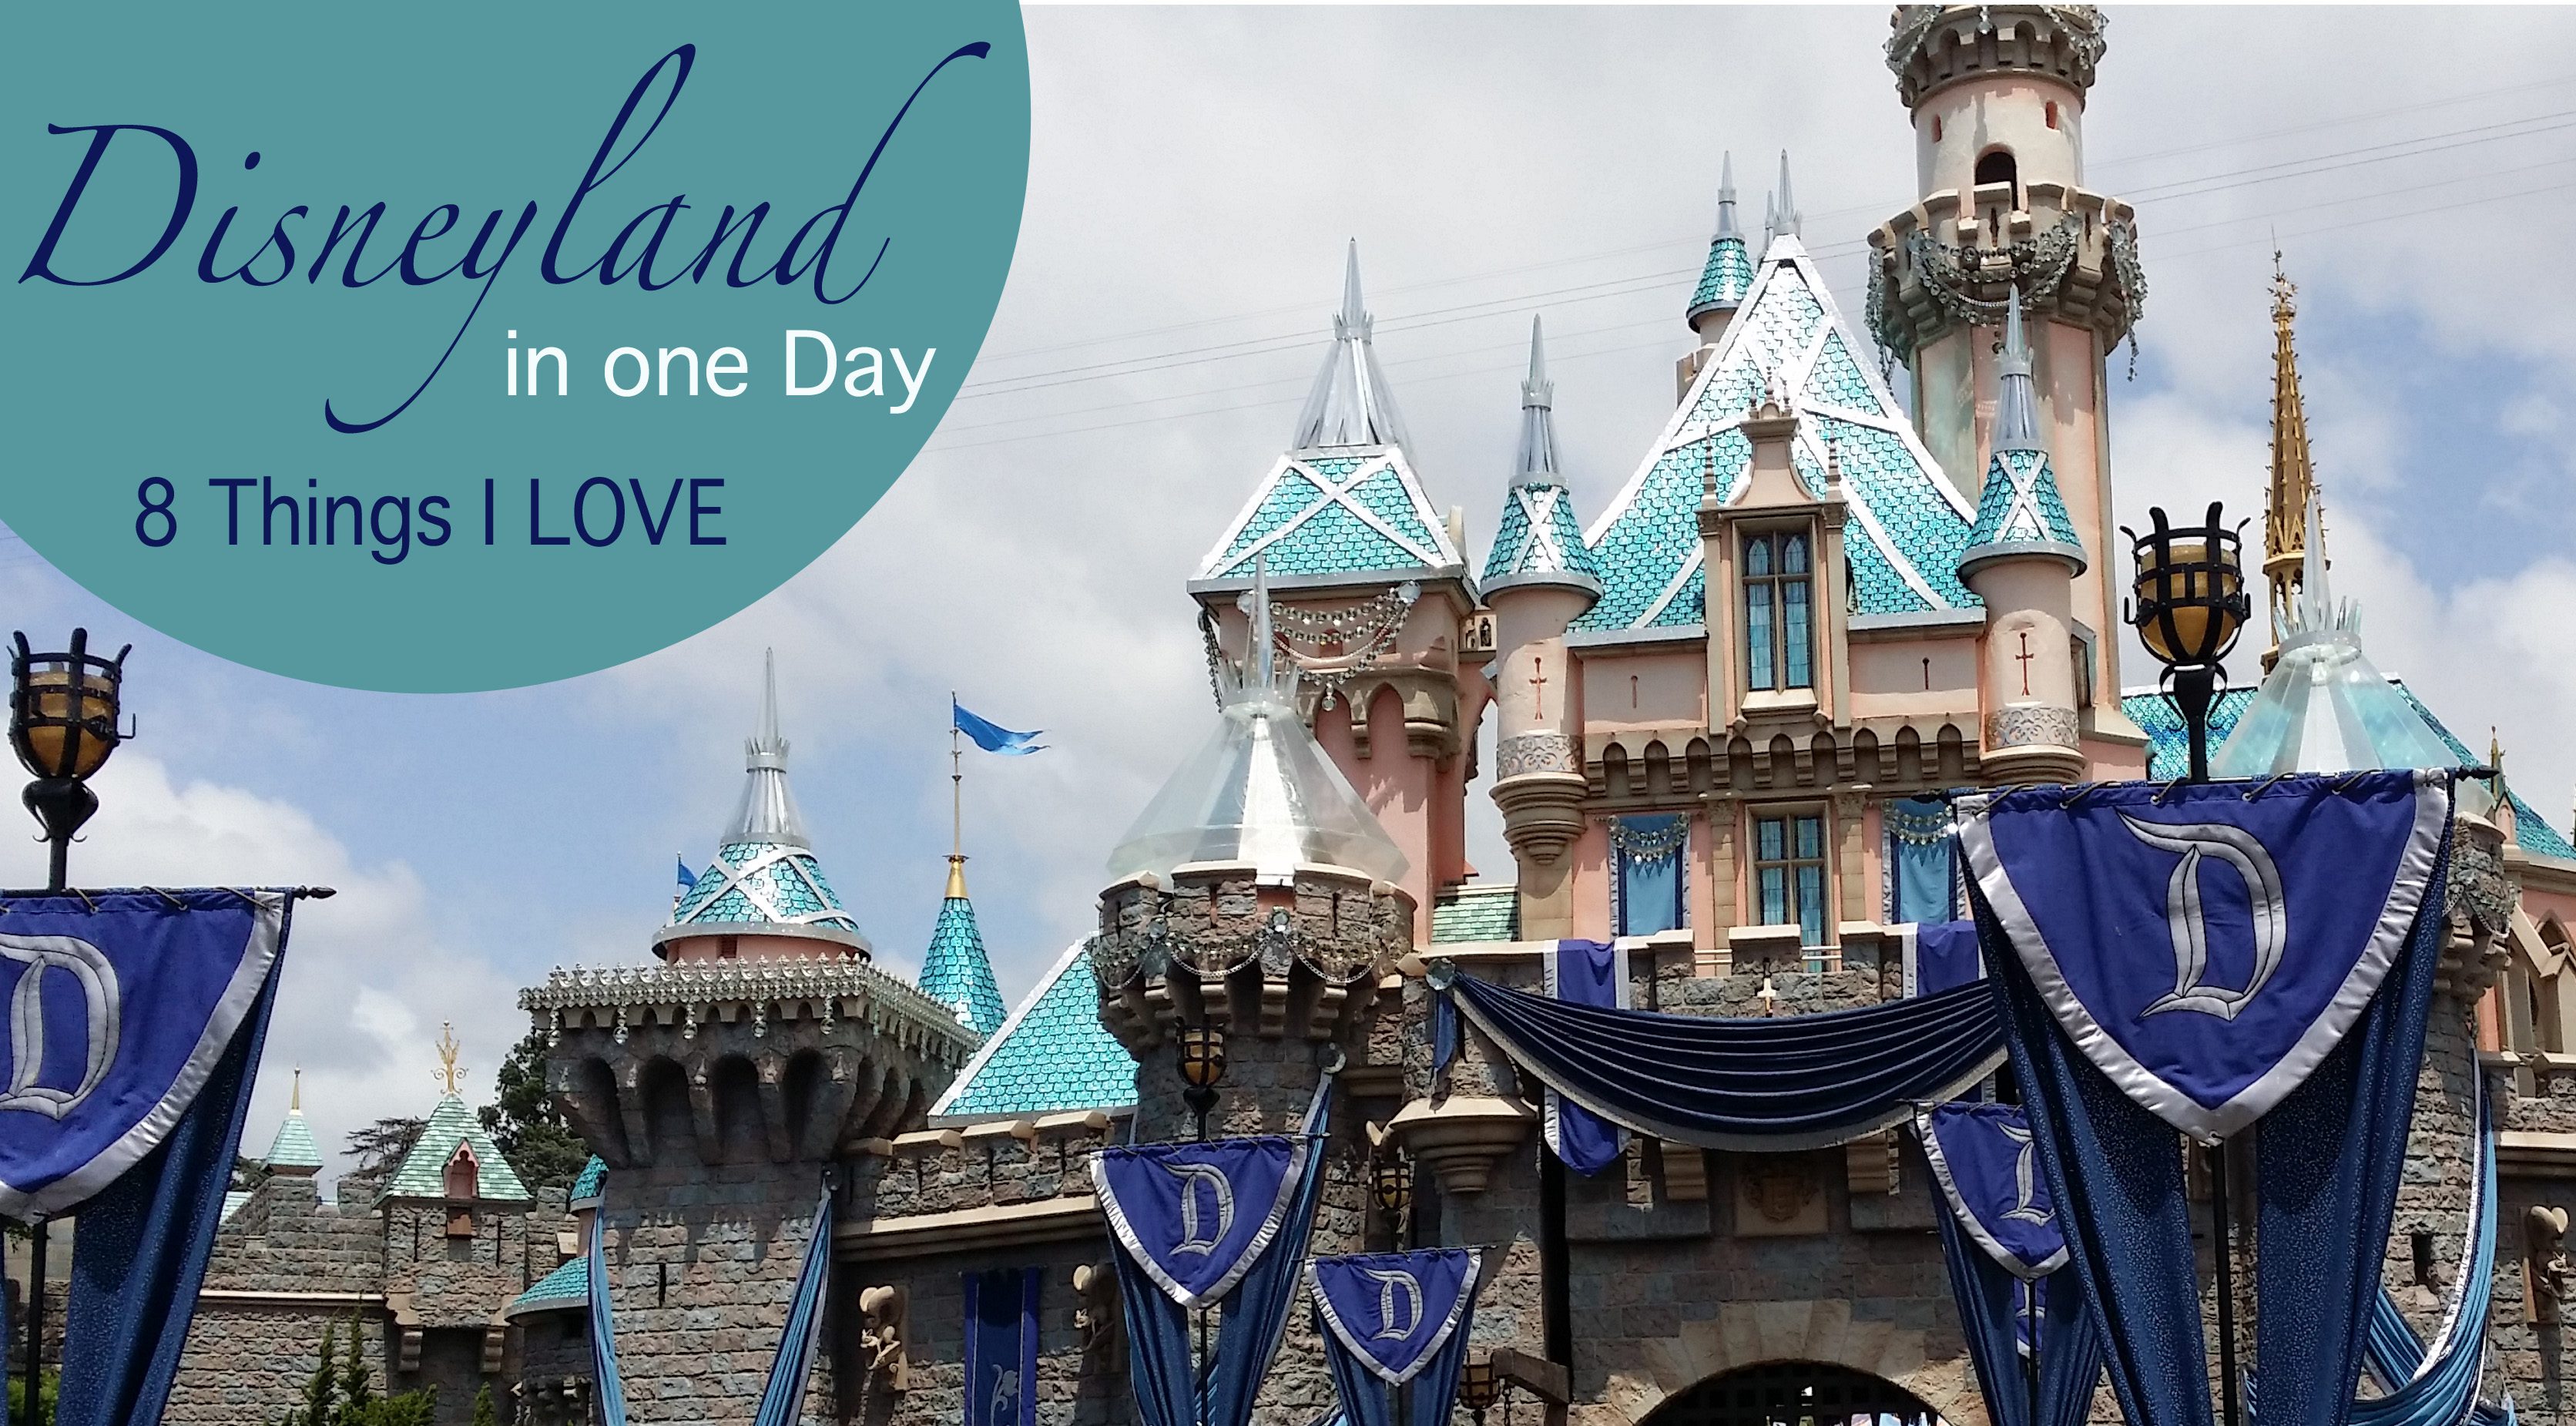 Visiting Tomorrowland at Disneyland & 8 Things I love at Disneyland #TomorrowlandEvent